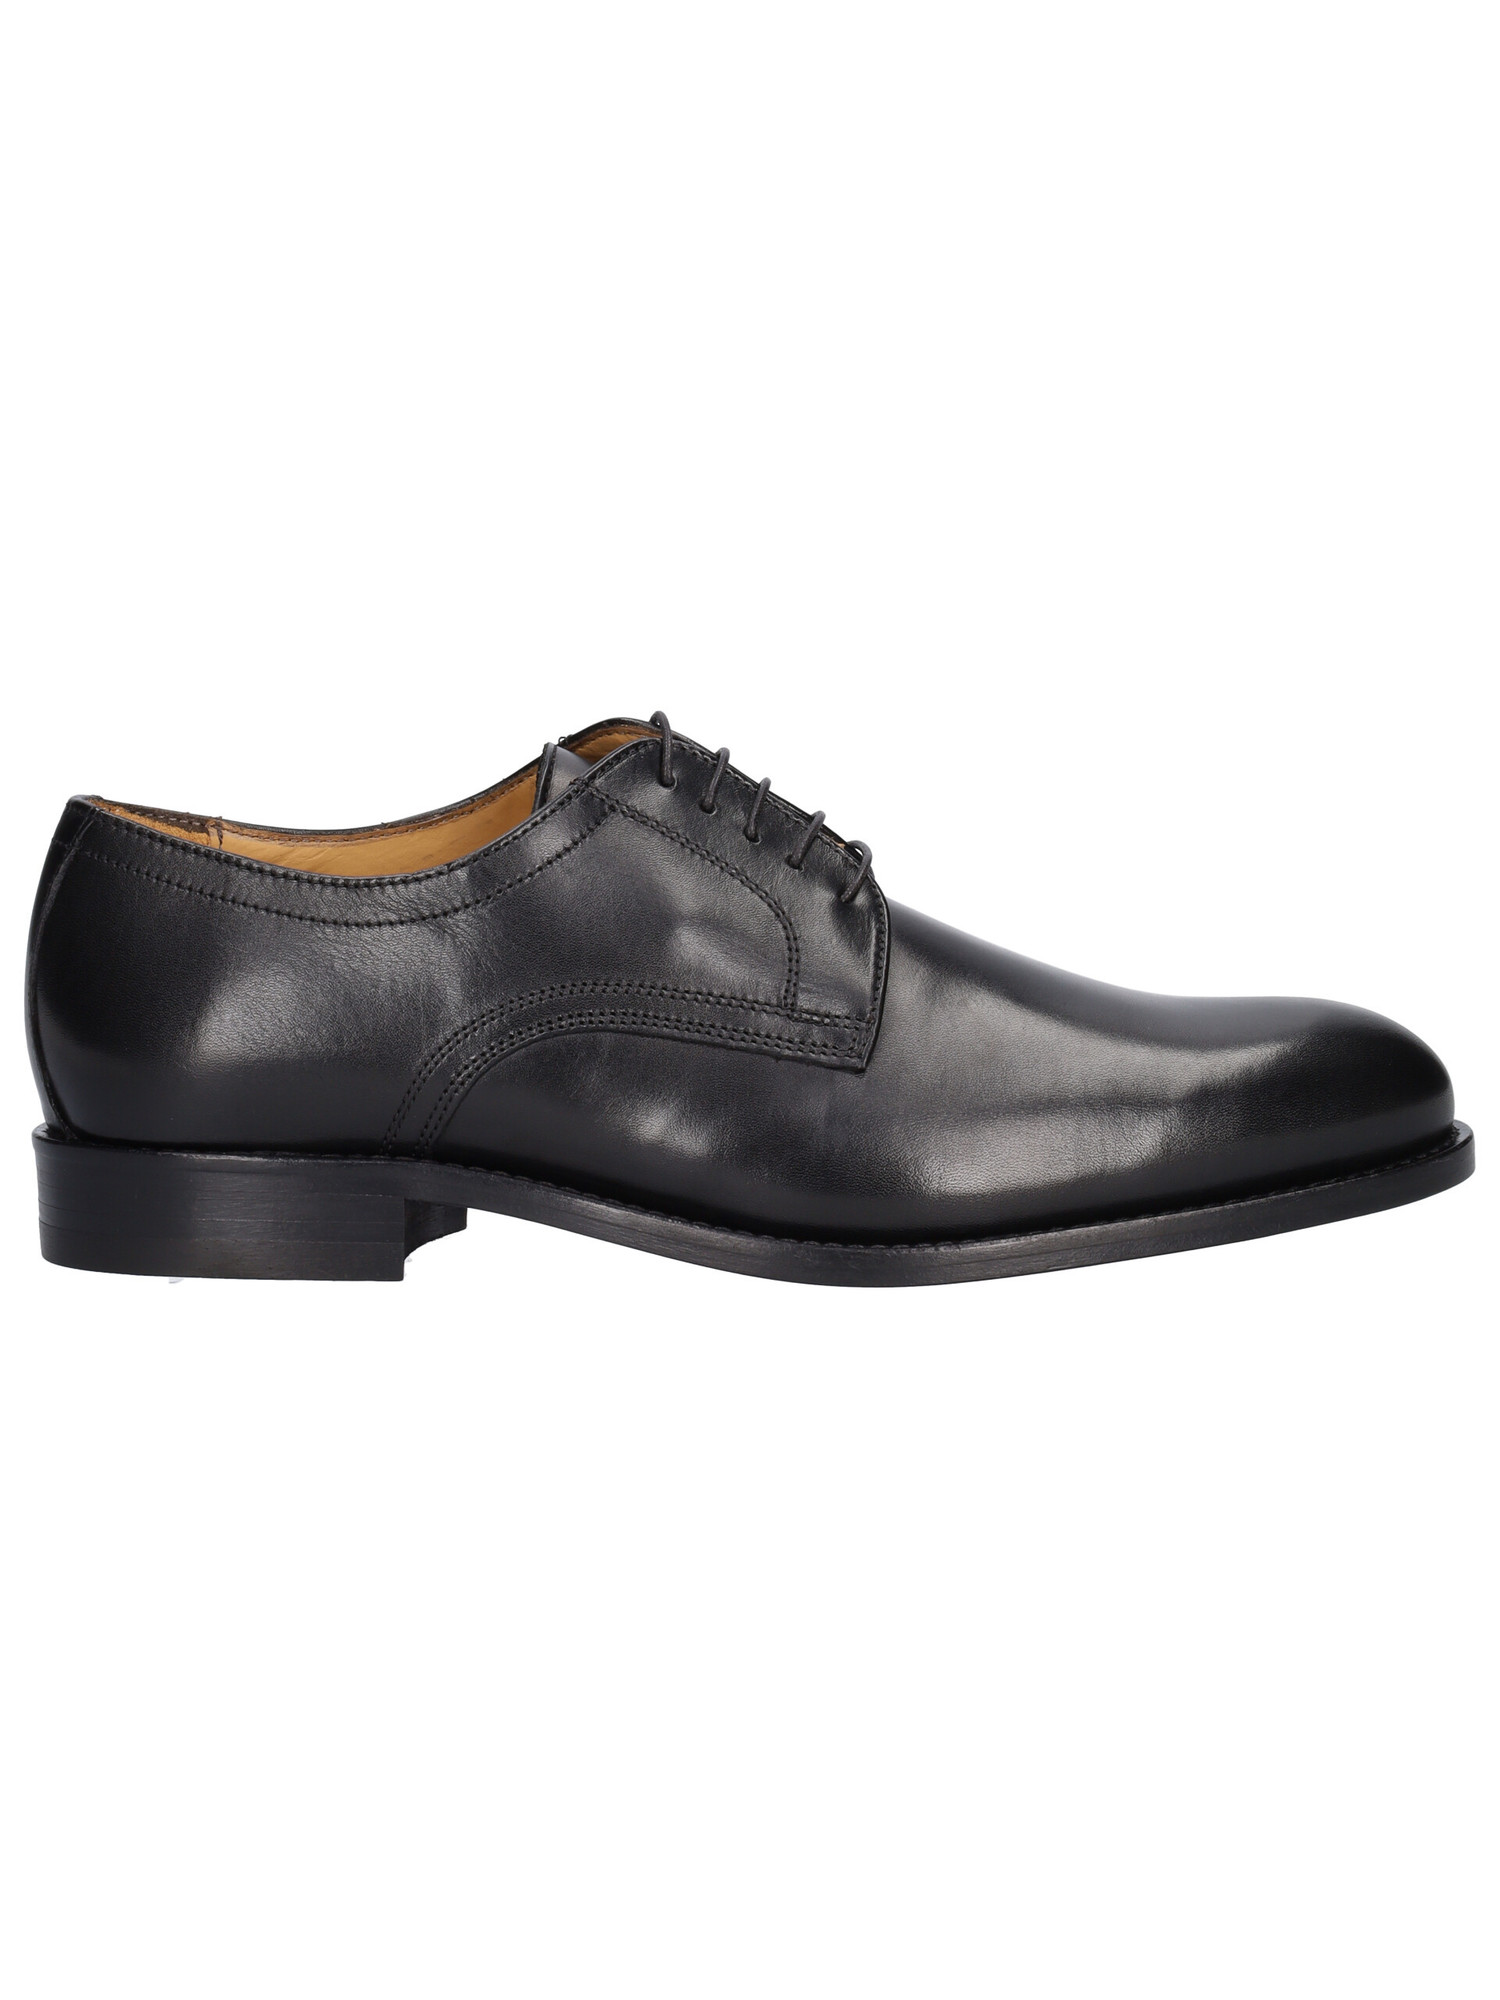 scarpa-elegante-mercanti-fiorentini-da-uomo-nera-b17775